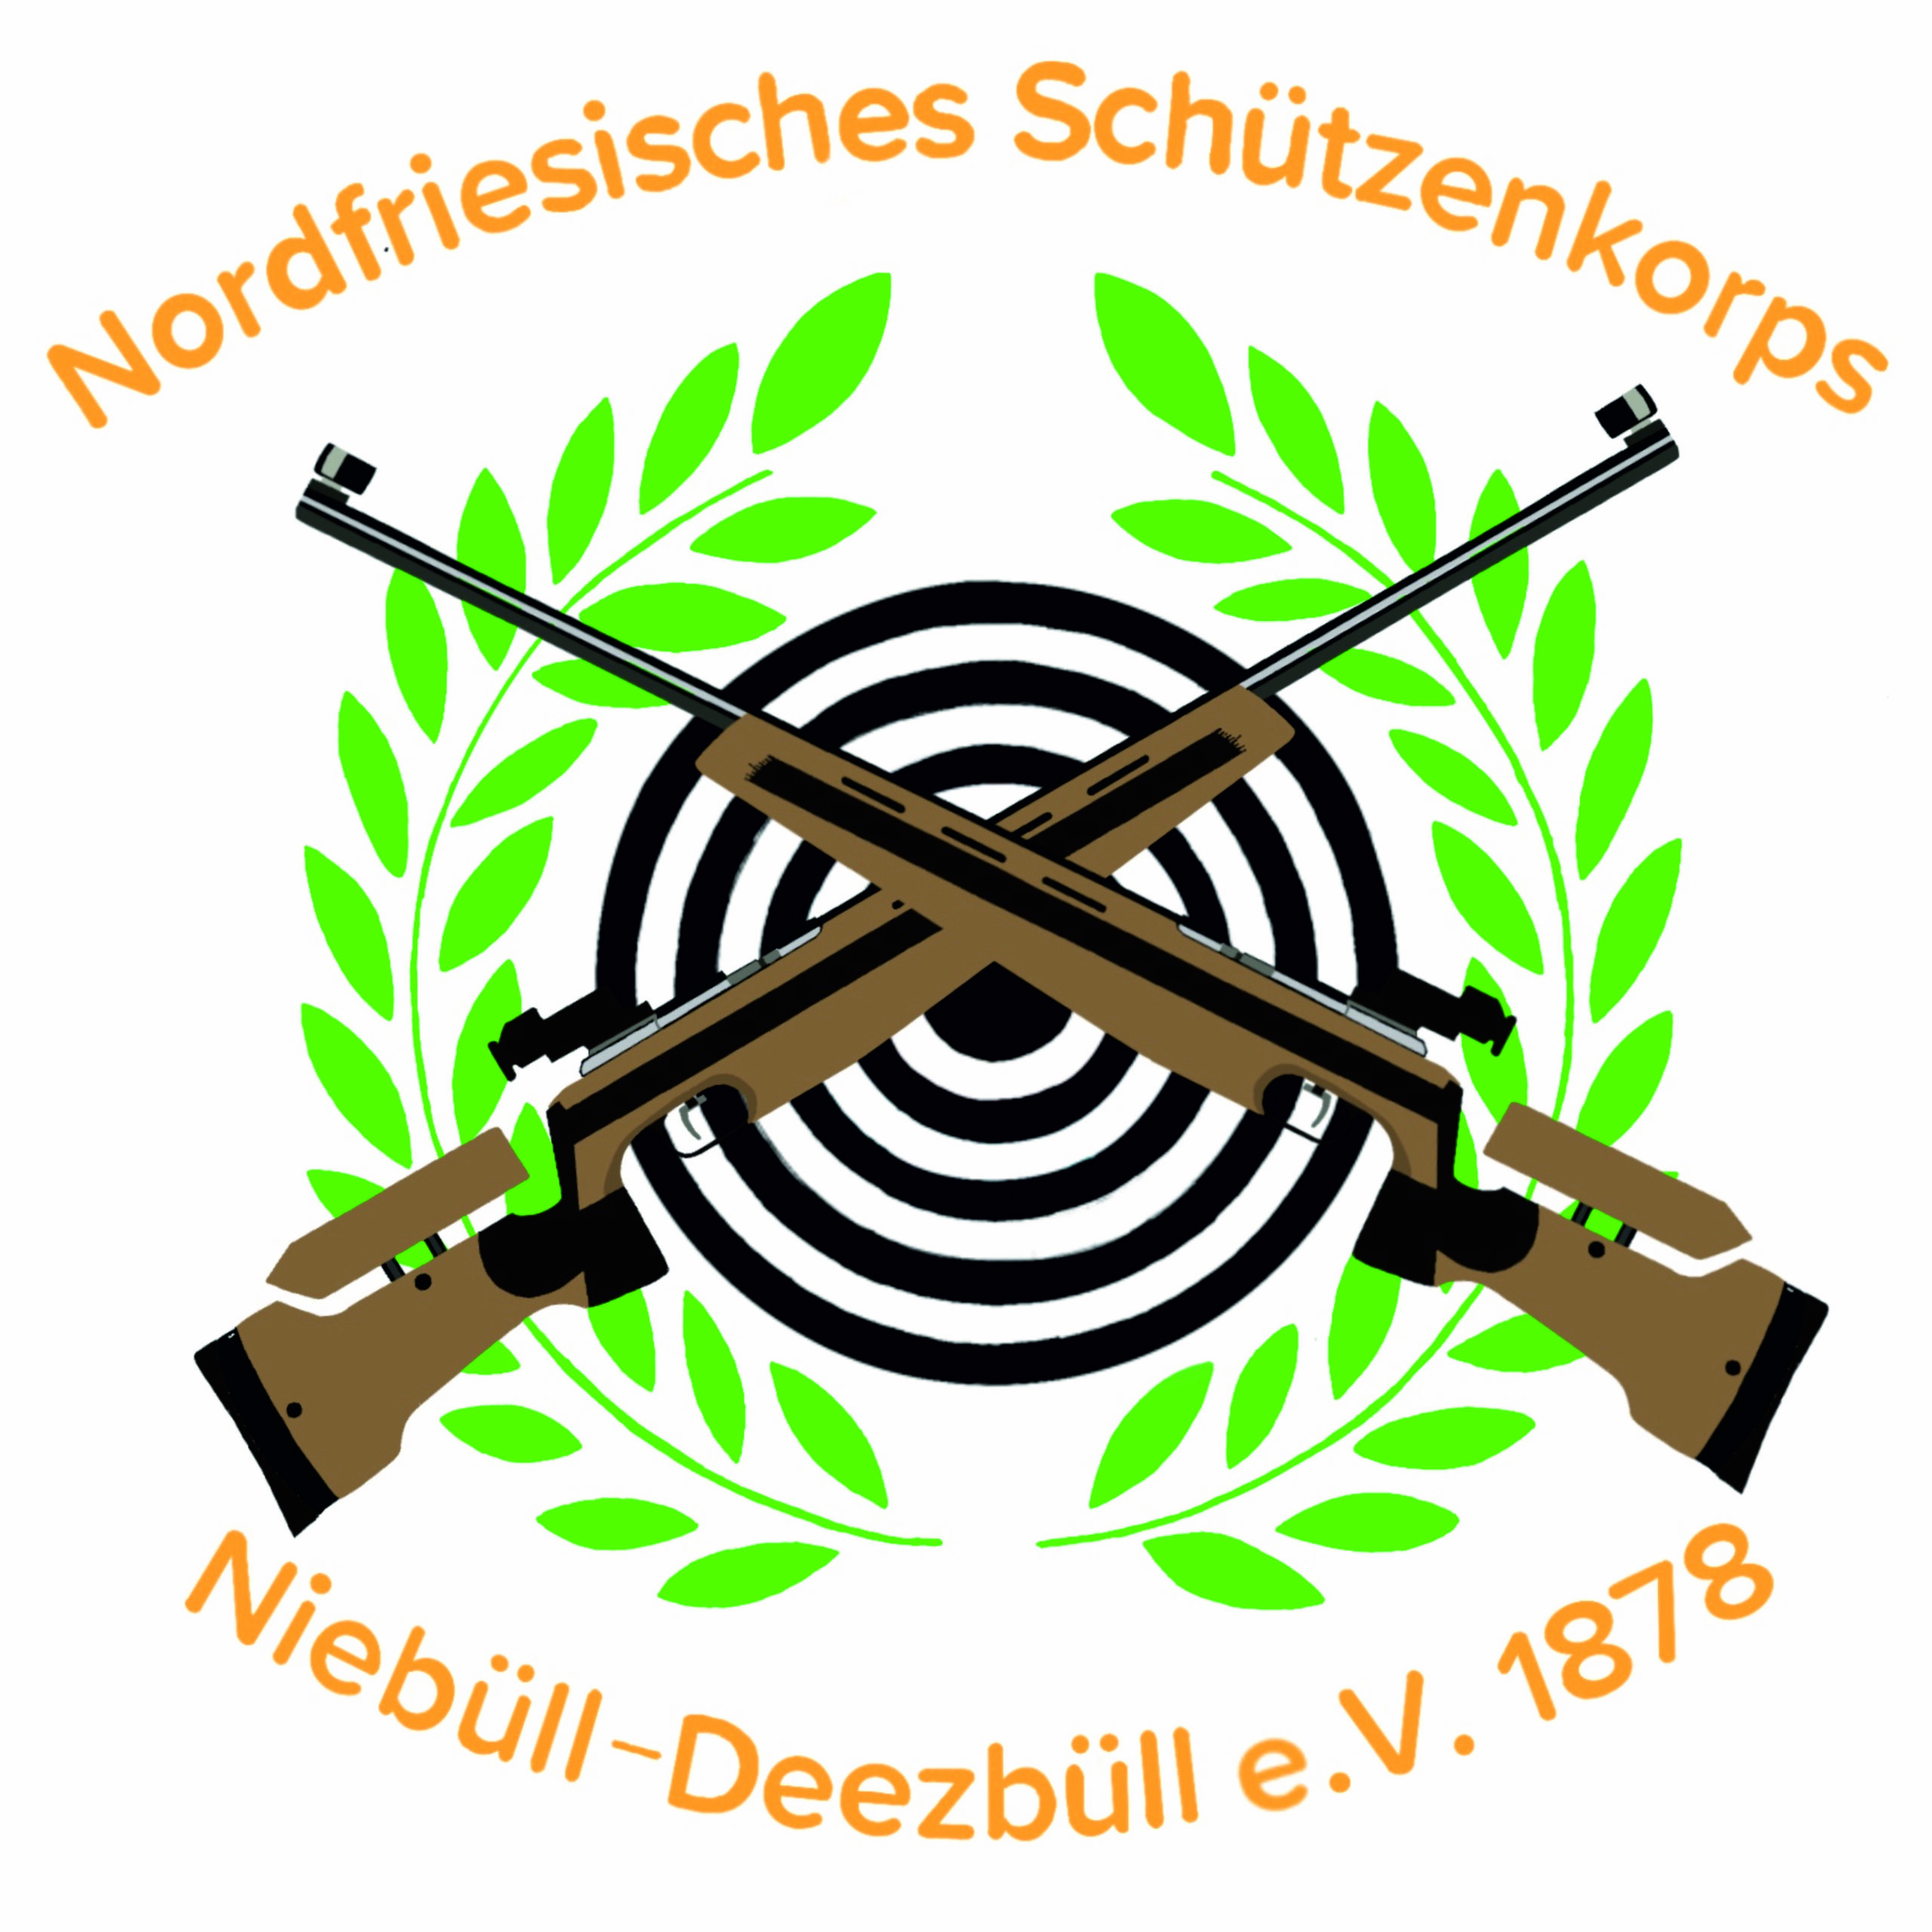 Nordfriesisches Schützenkorps